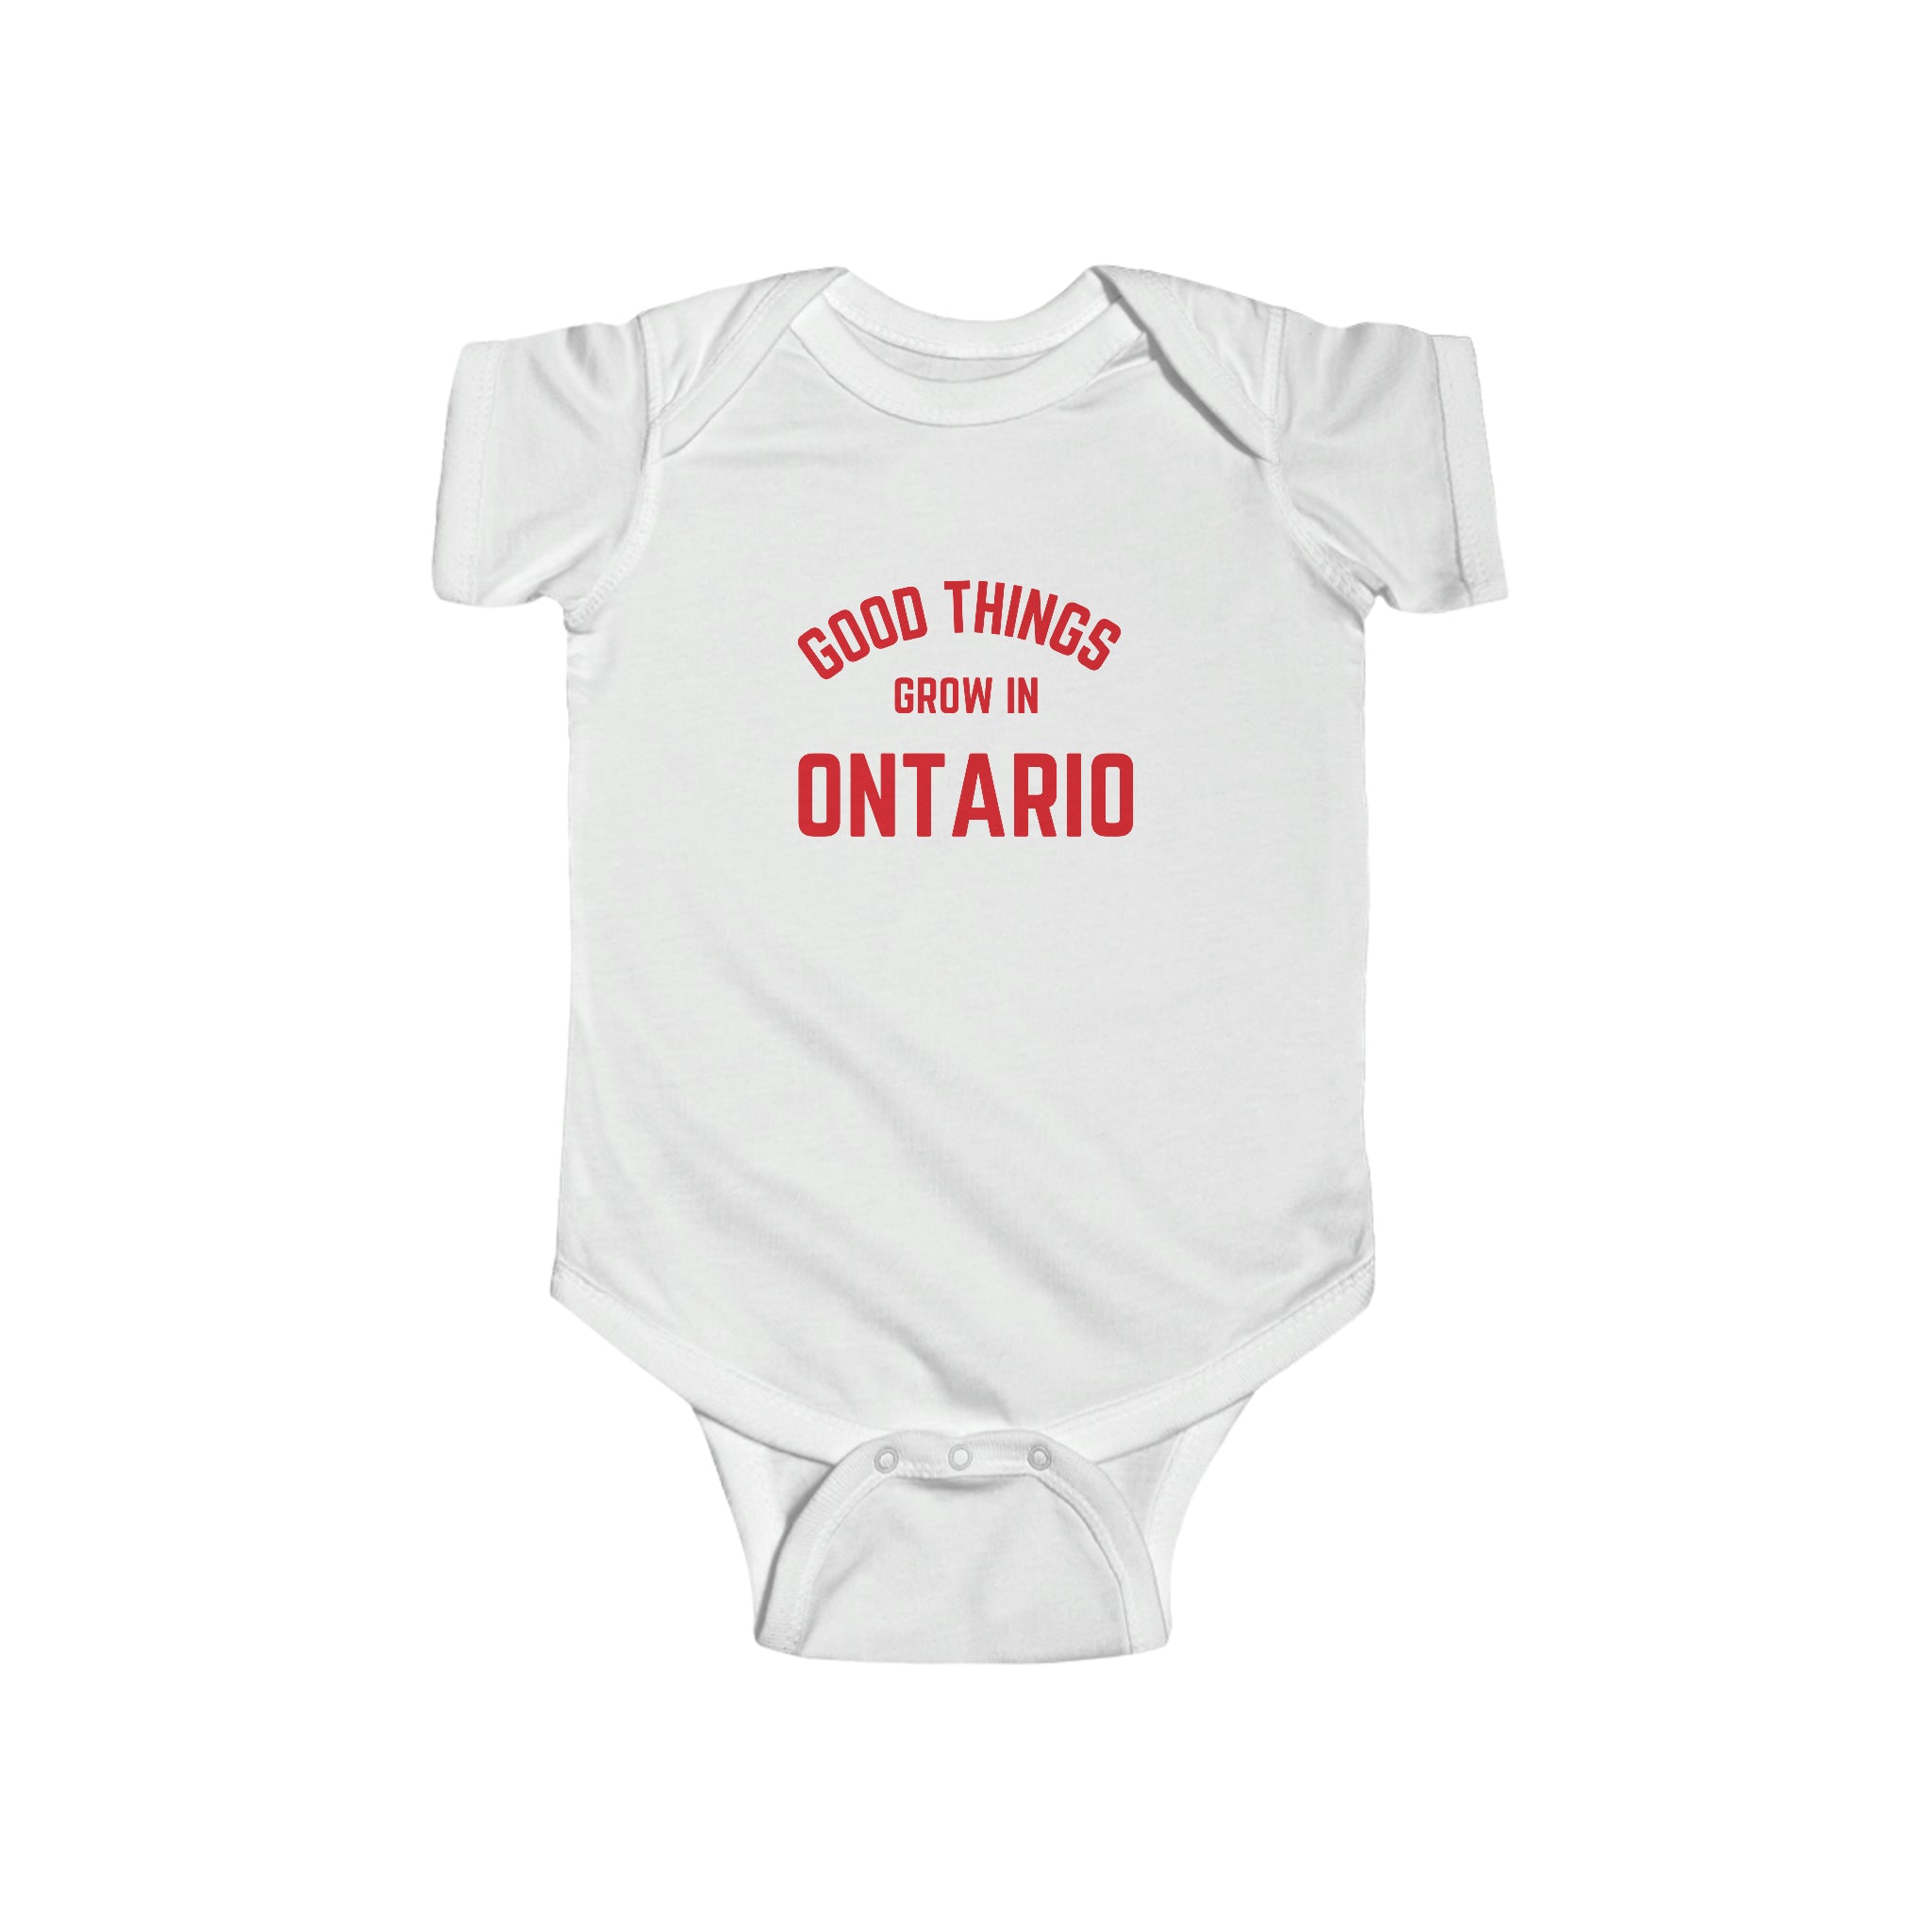 Les bonnes choses poussent en Ontario - Body pour bébé